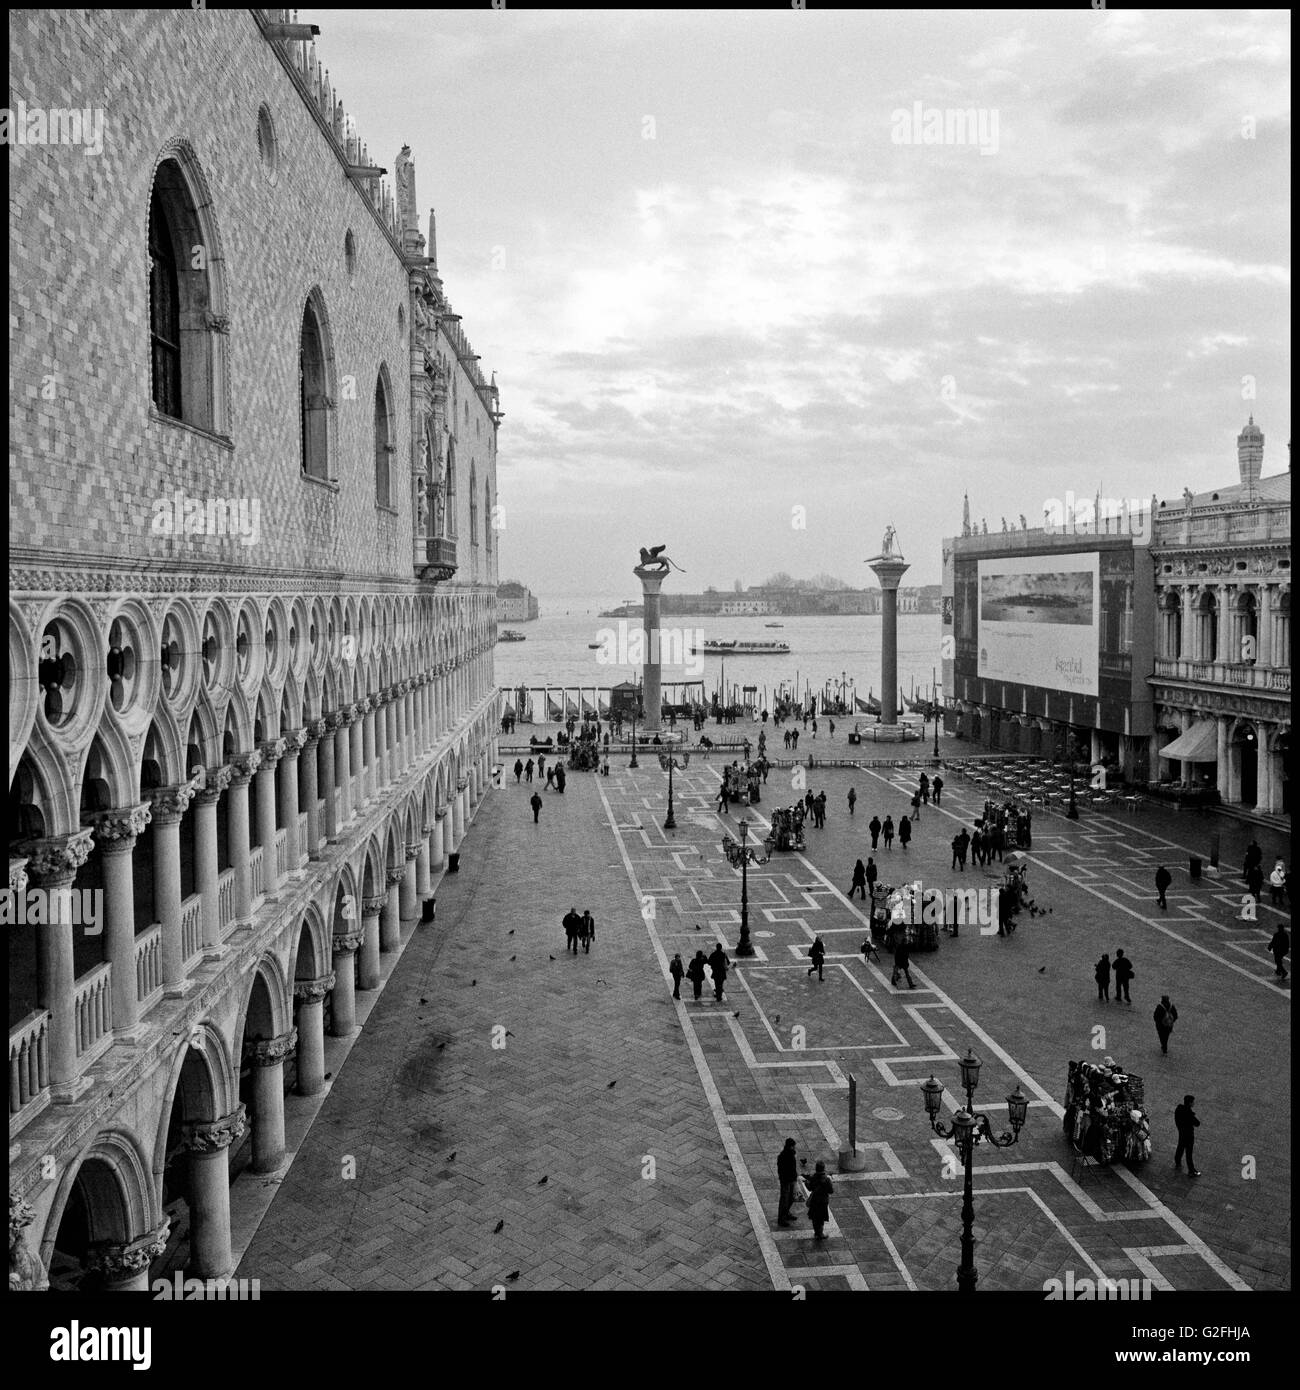 Piazzetta di San Marco, Venice, Italy Stock Photo